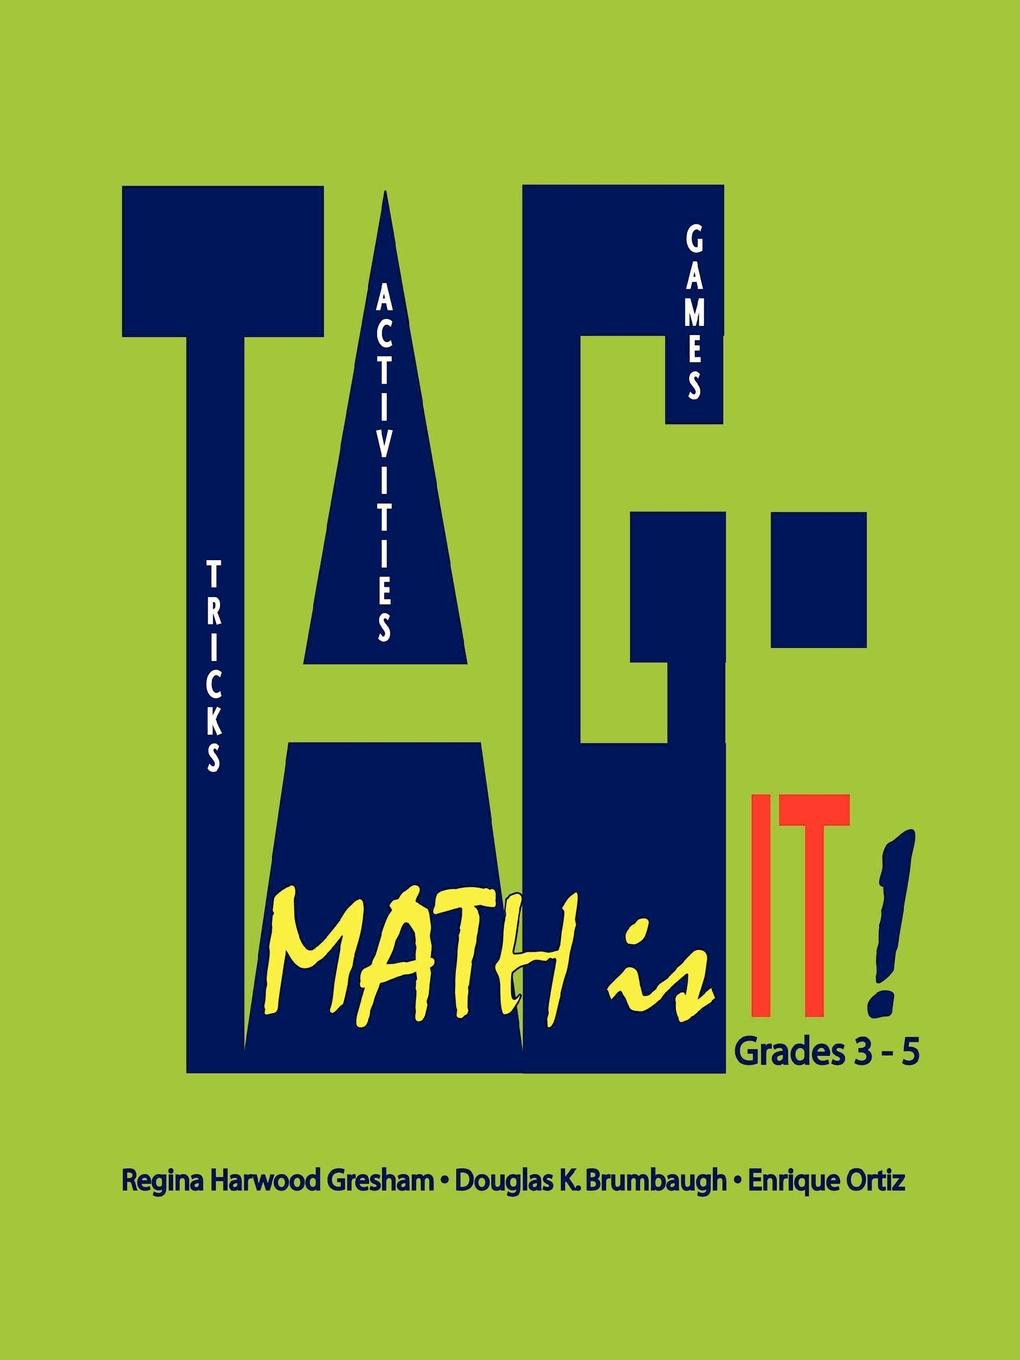 TAG - Math is it. Grades 3 - 5